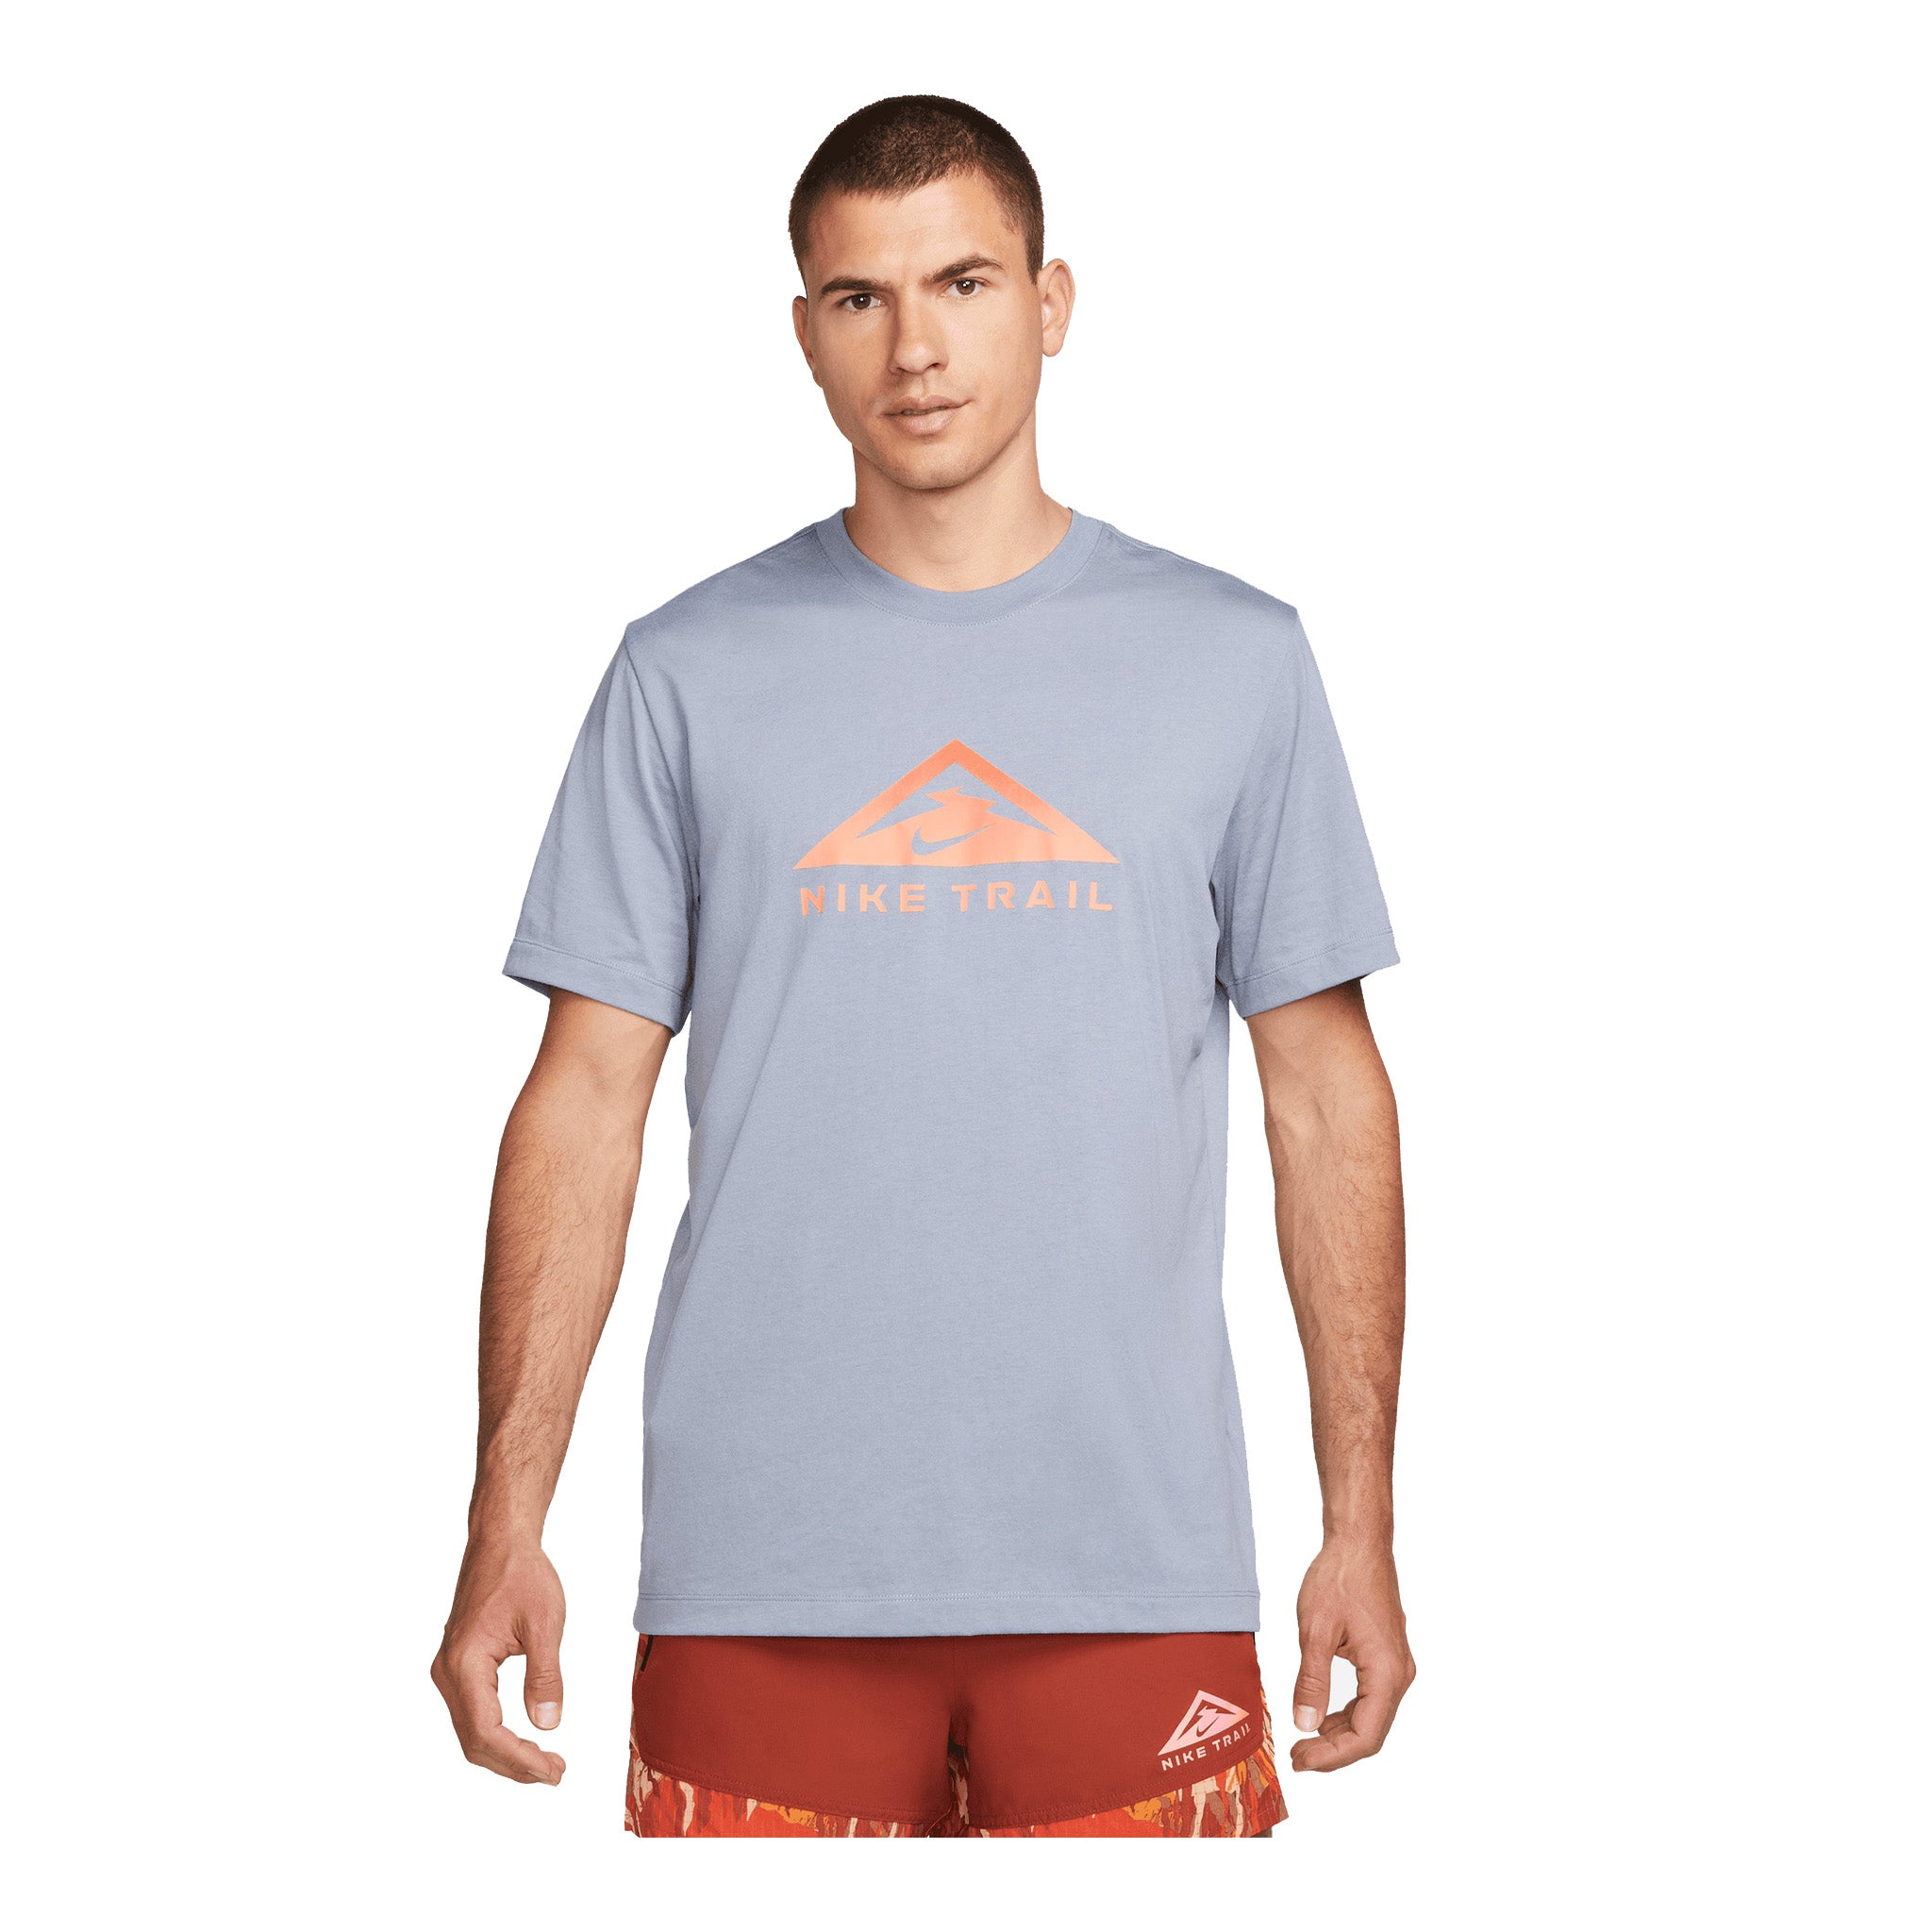 T-shirt pour le trail running sport DAEHLIE intensity DIRECTOIRE BLU pour  homme